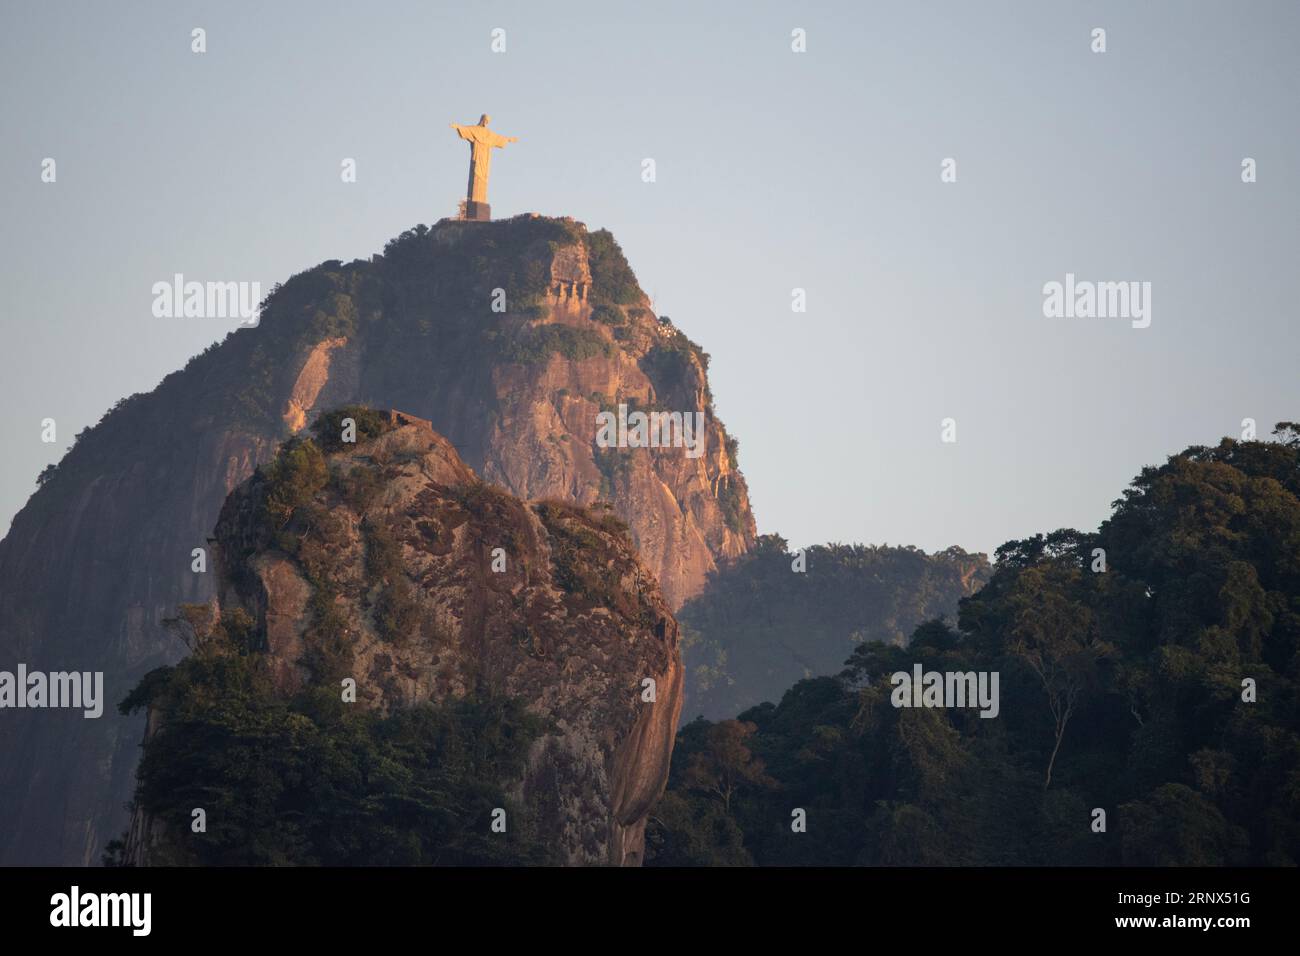 Rio de Janeiro, Brasile: Skyline all'alba, montagne, foresta pluviale e il monte Corcovado con Cristo Redentore, una delle sette meraviglie del mondo Foto Stock